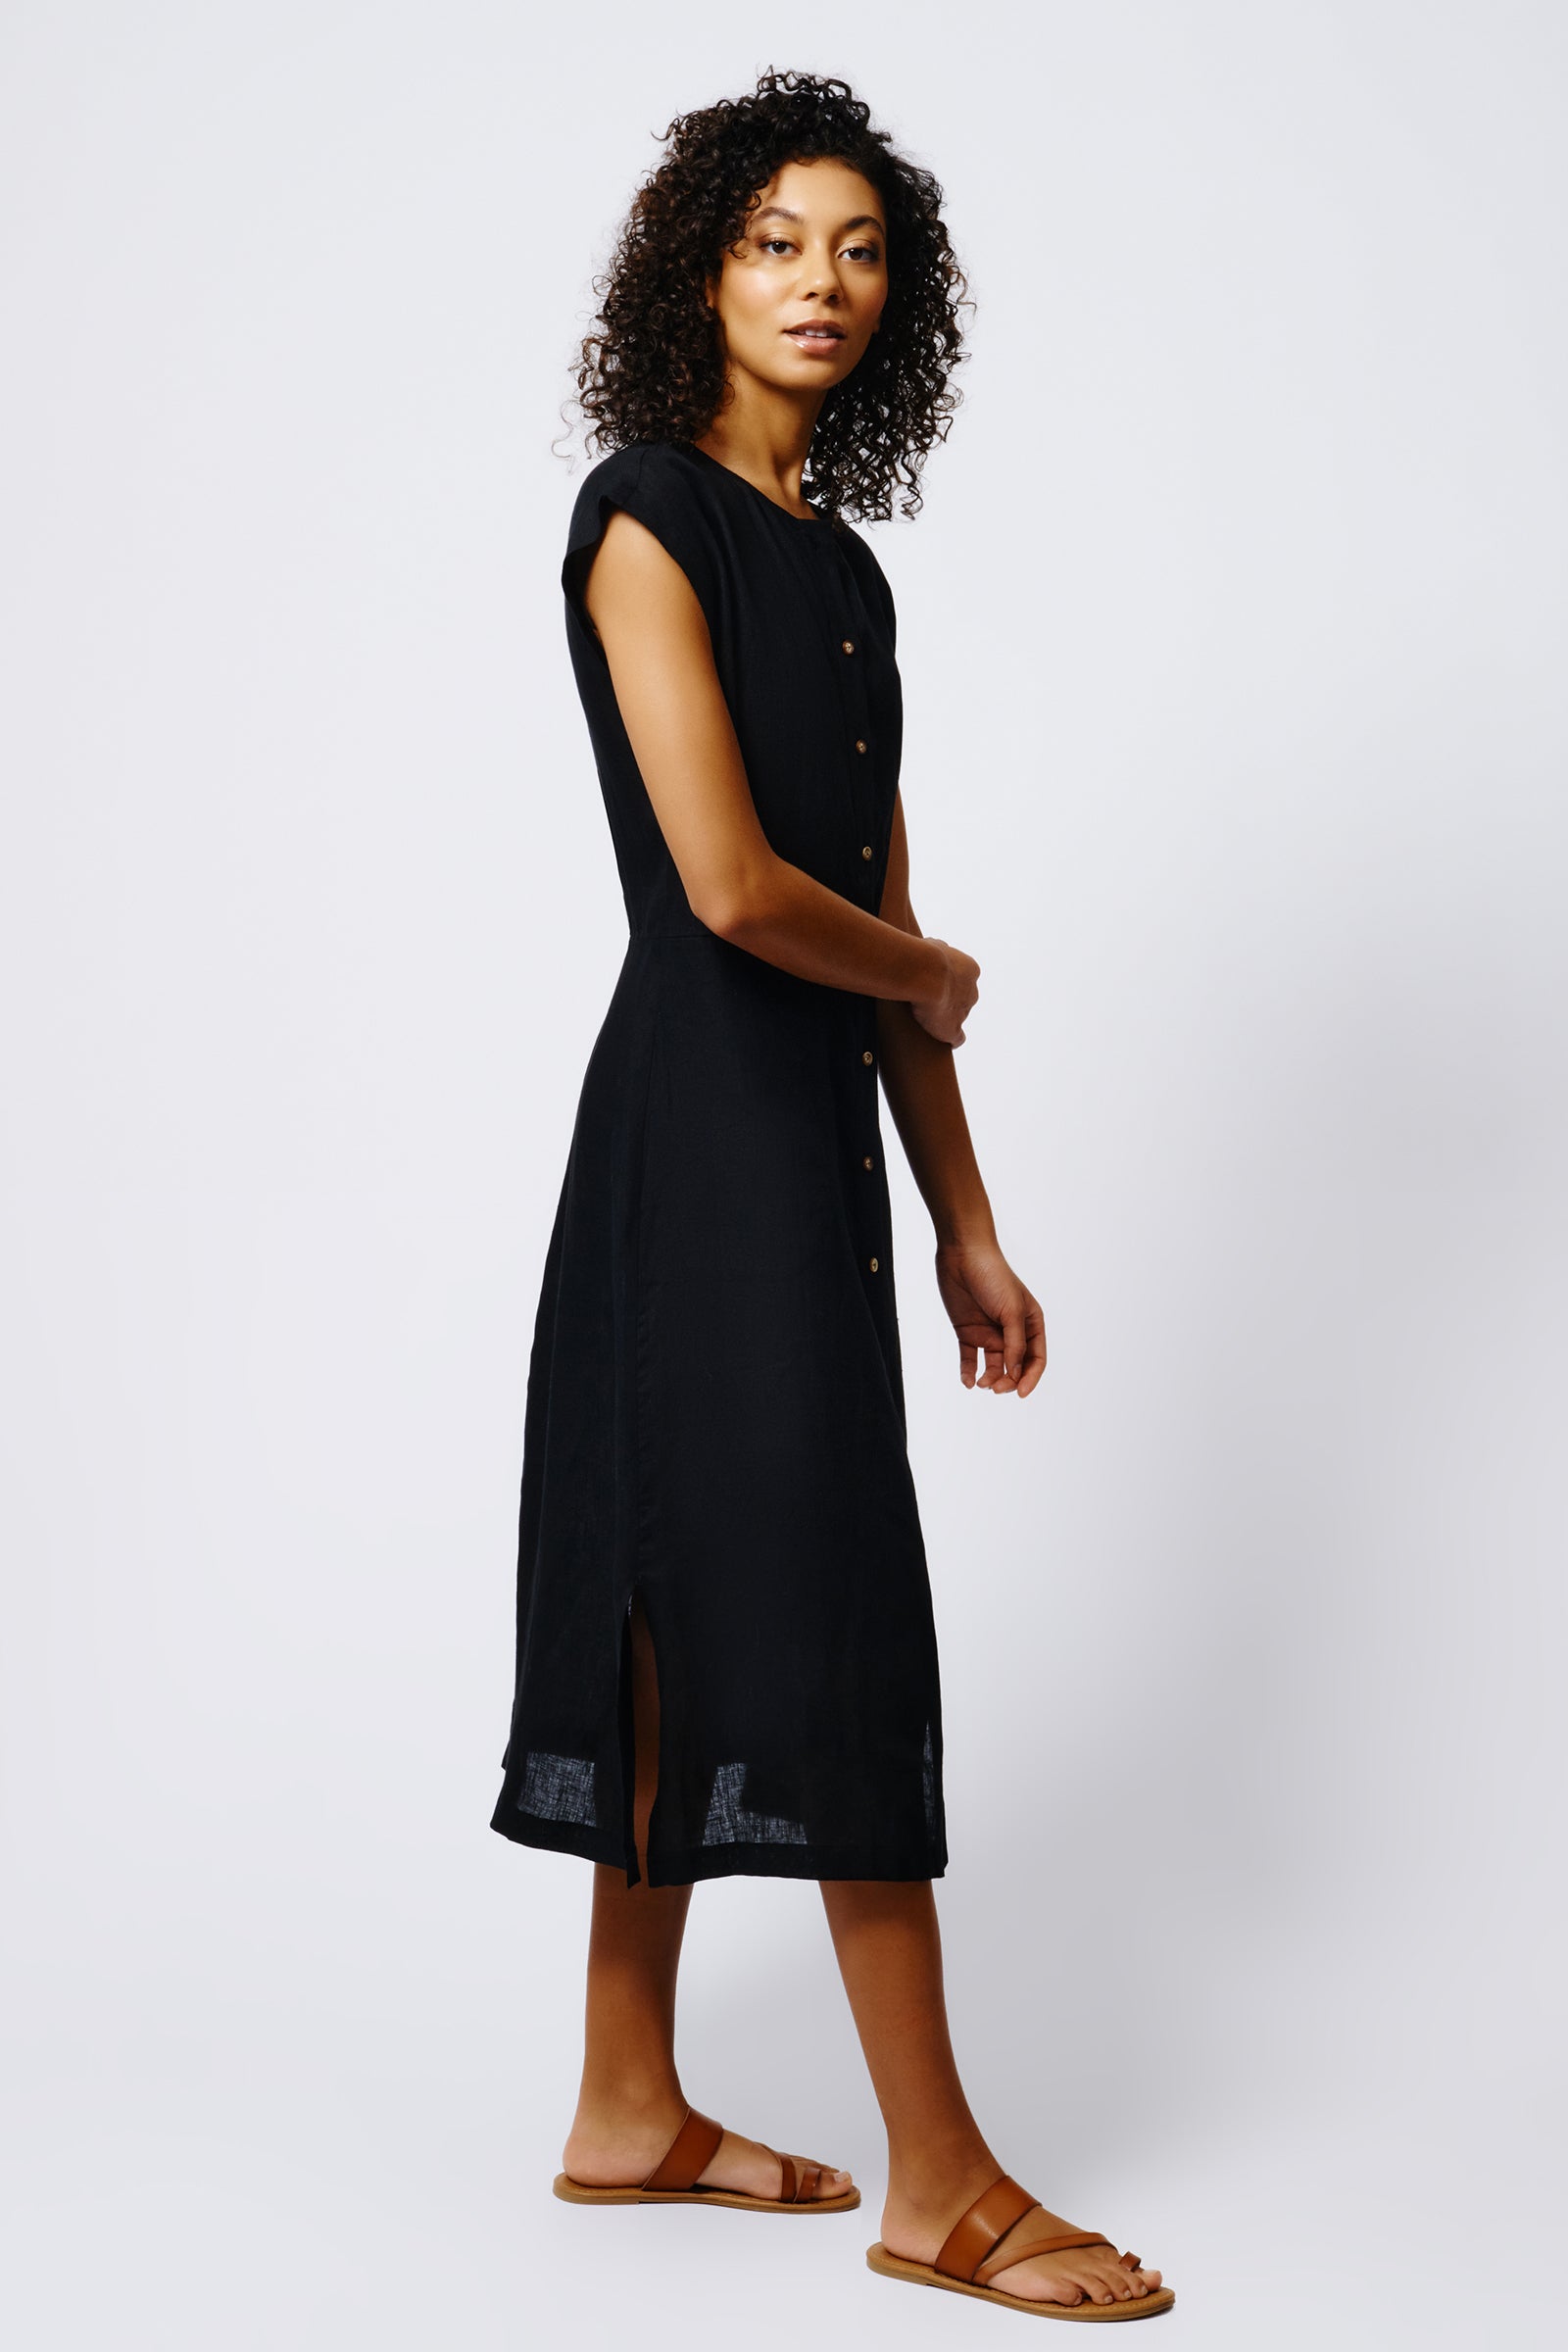 Kal Rieman Harlow Cap Sleeve Dress in Black Linen on Model Full Side View